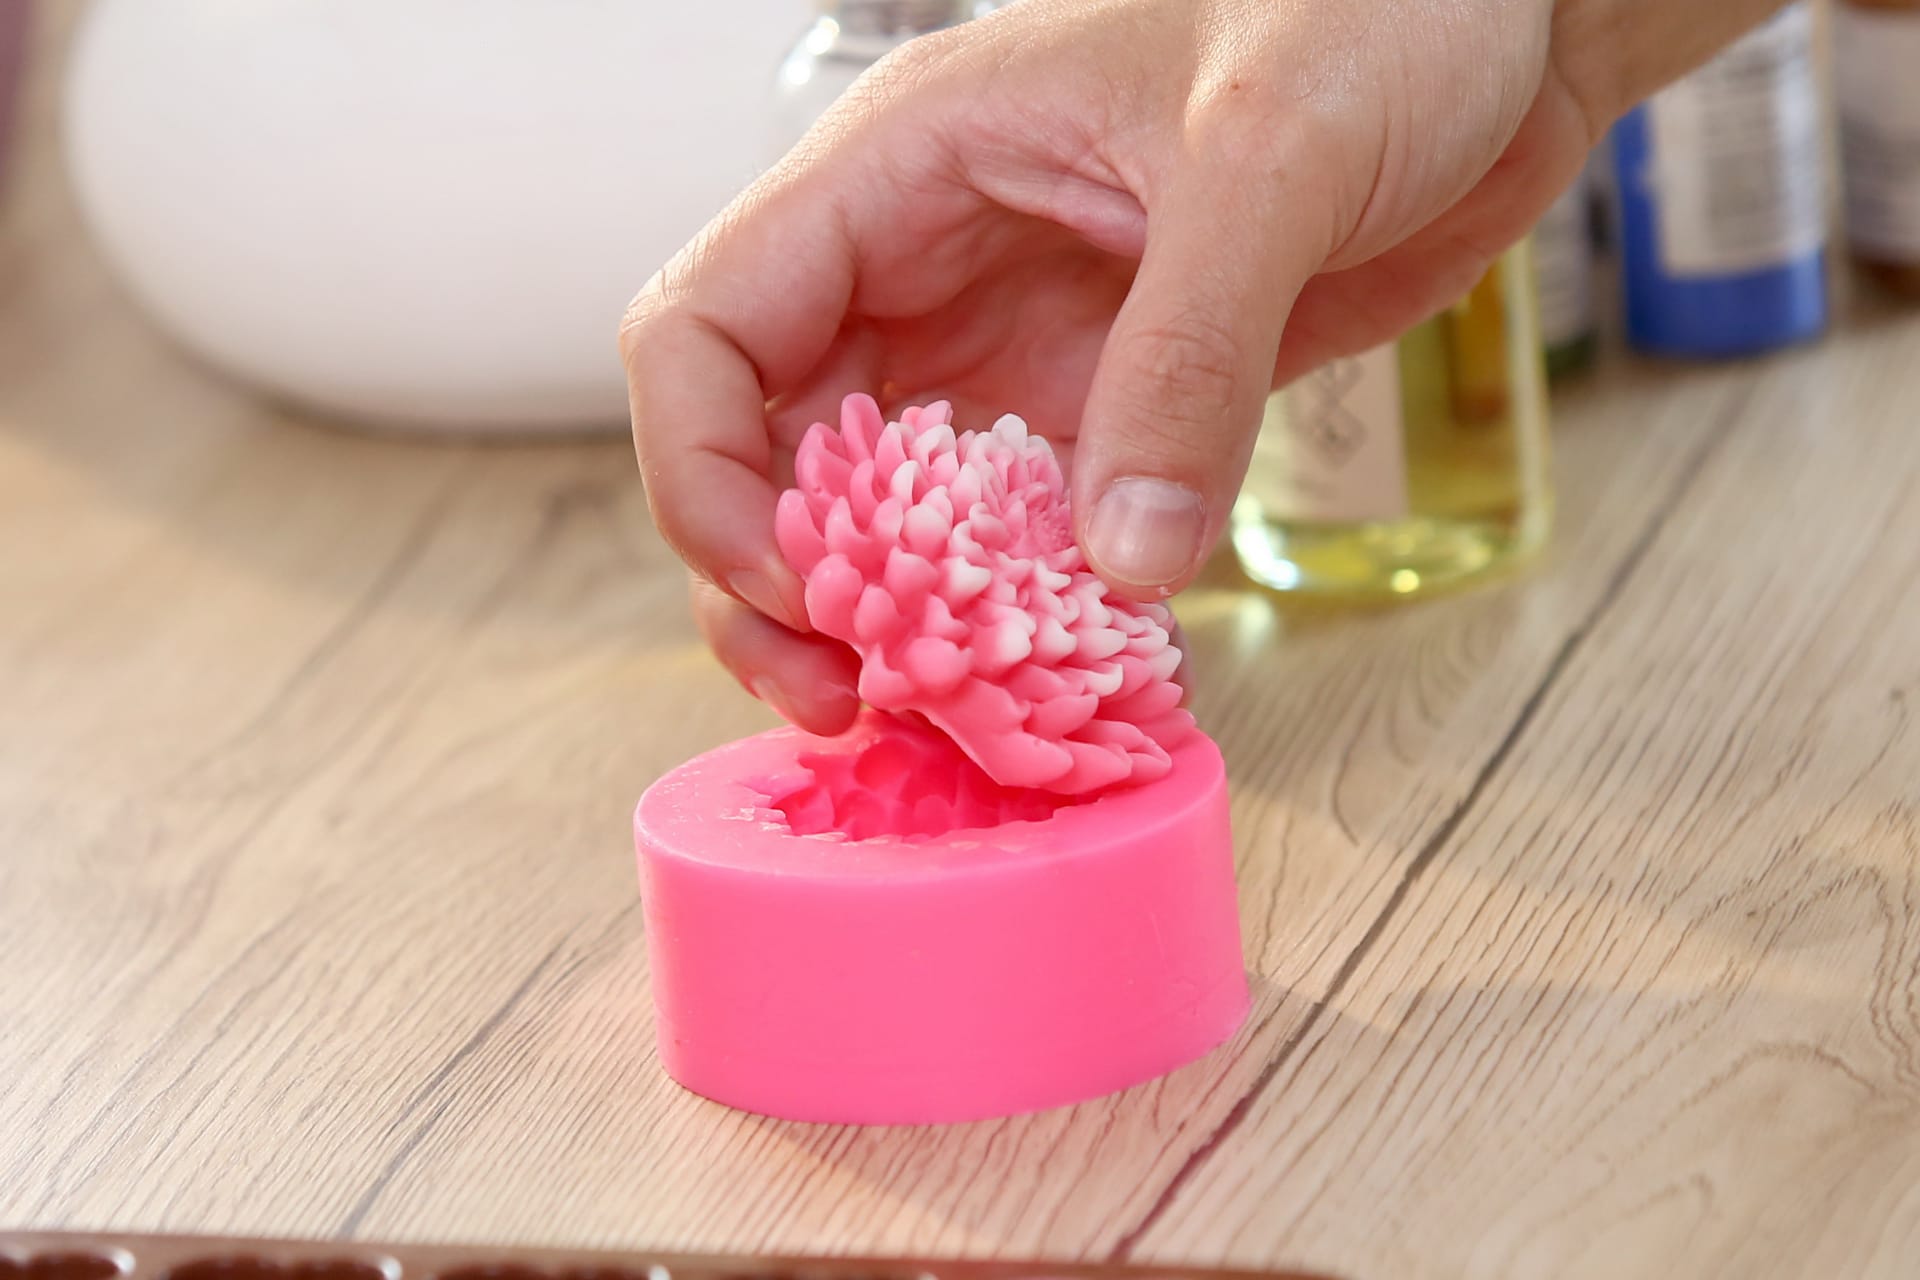 Ztuhlé mýdlo jednoduše vyloupněte z formičky ven